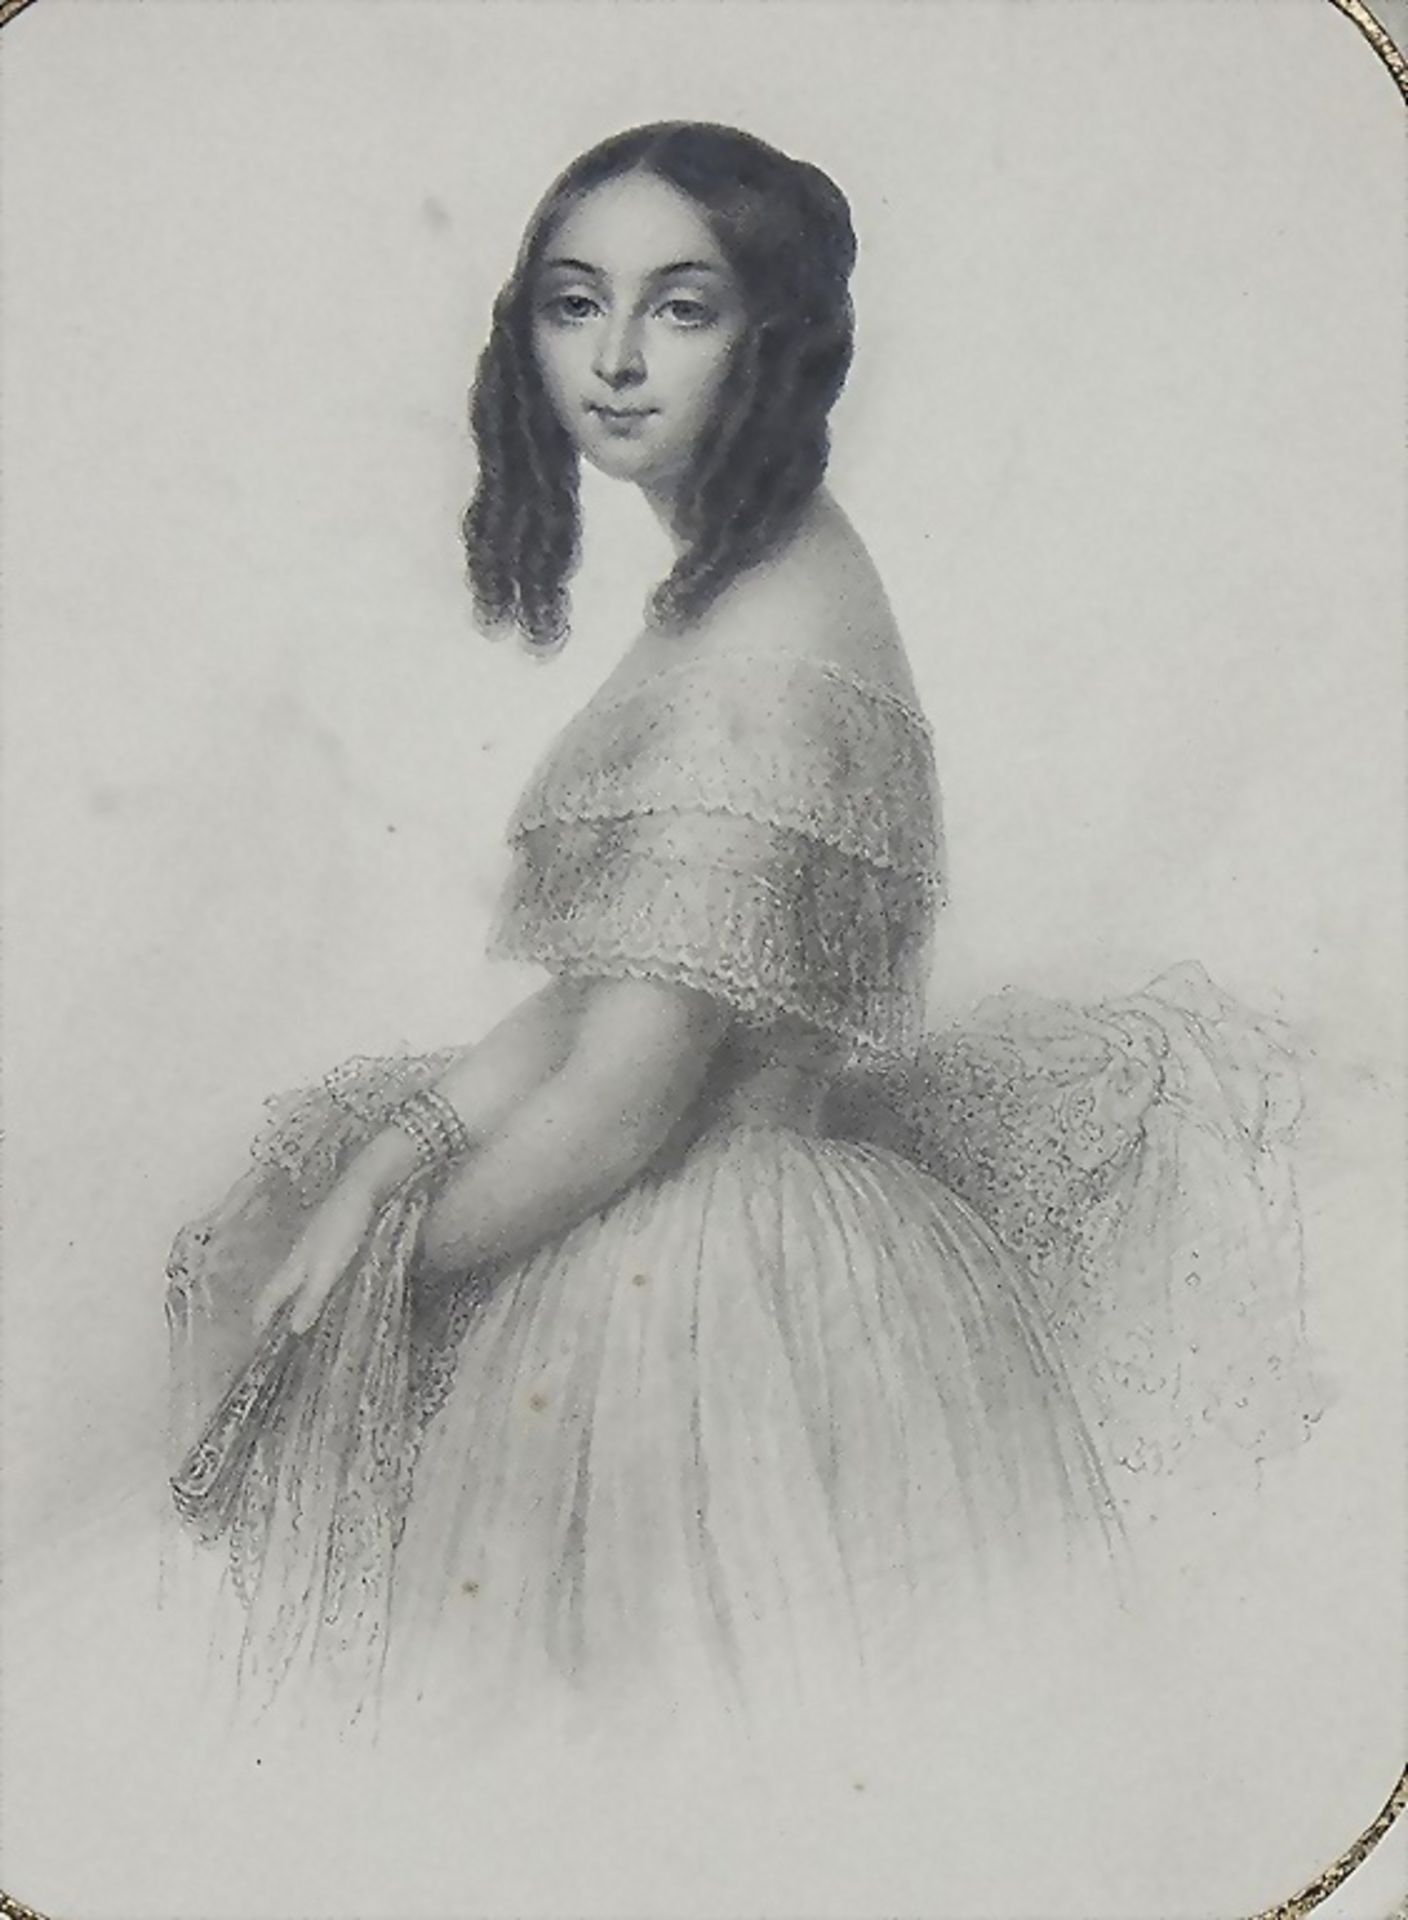 Hyppolitez (Hippolyte) Masson, Porträt einer jungen Dame, 1850